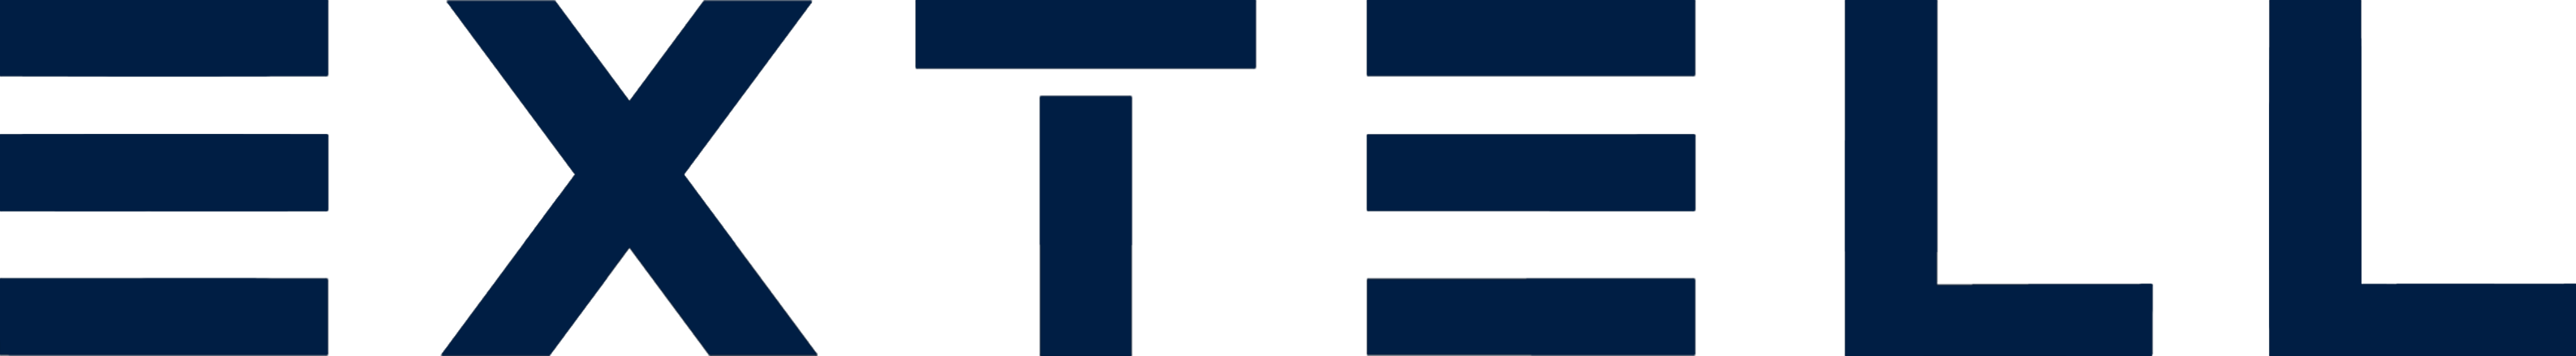 Extell_logo